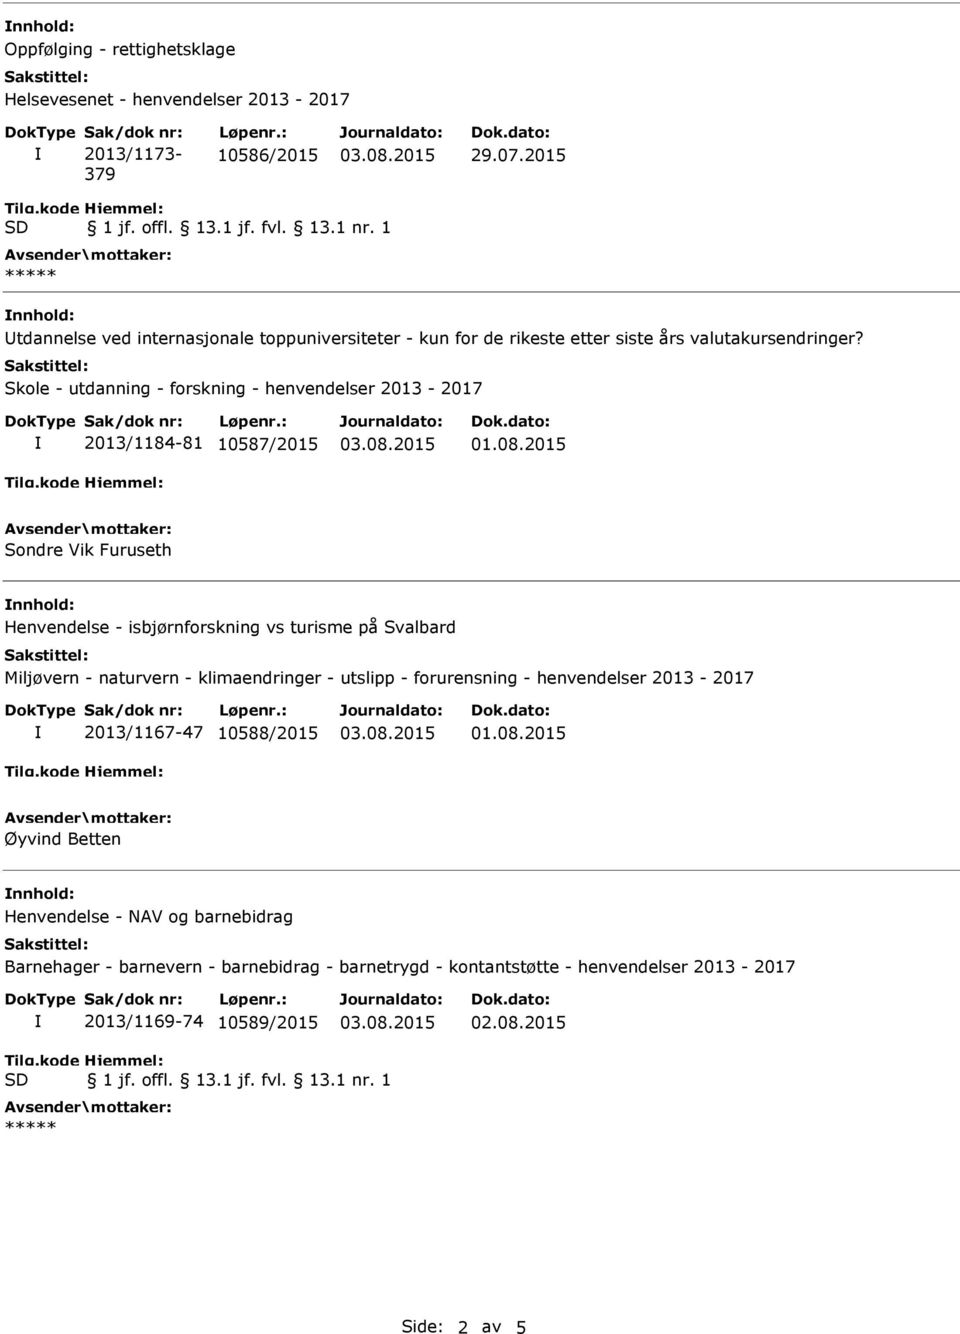 Skole - utdanning - forskning - henvendelser 2013-2017 2013/1184-81 10587/2015 Sondre Vik Furuseth Henvendelse - isbjørnforskning vs turisme på Svalbard Miljøvern -